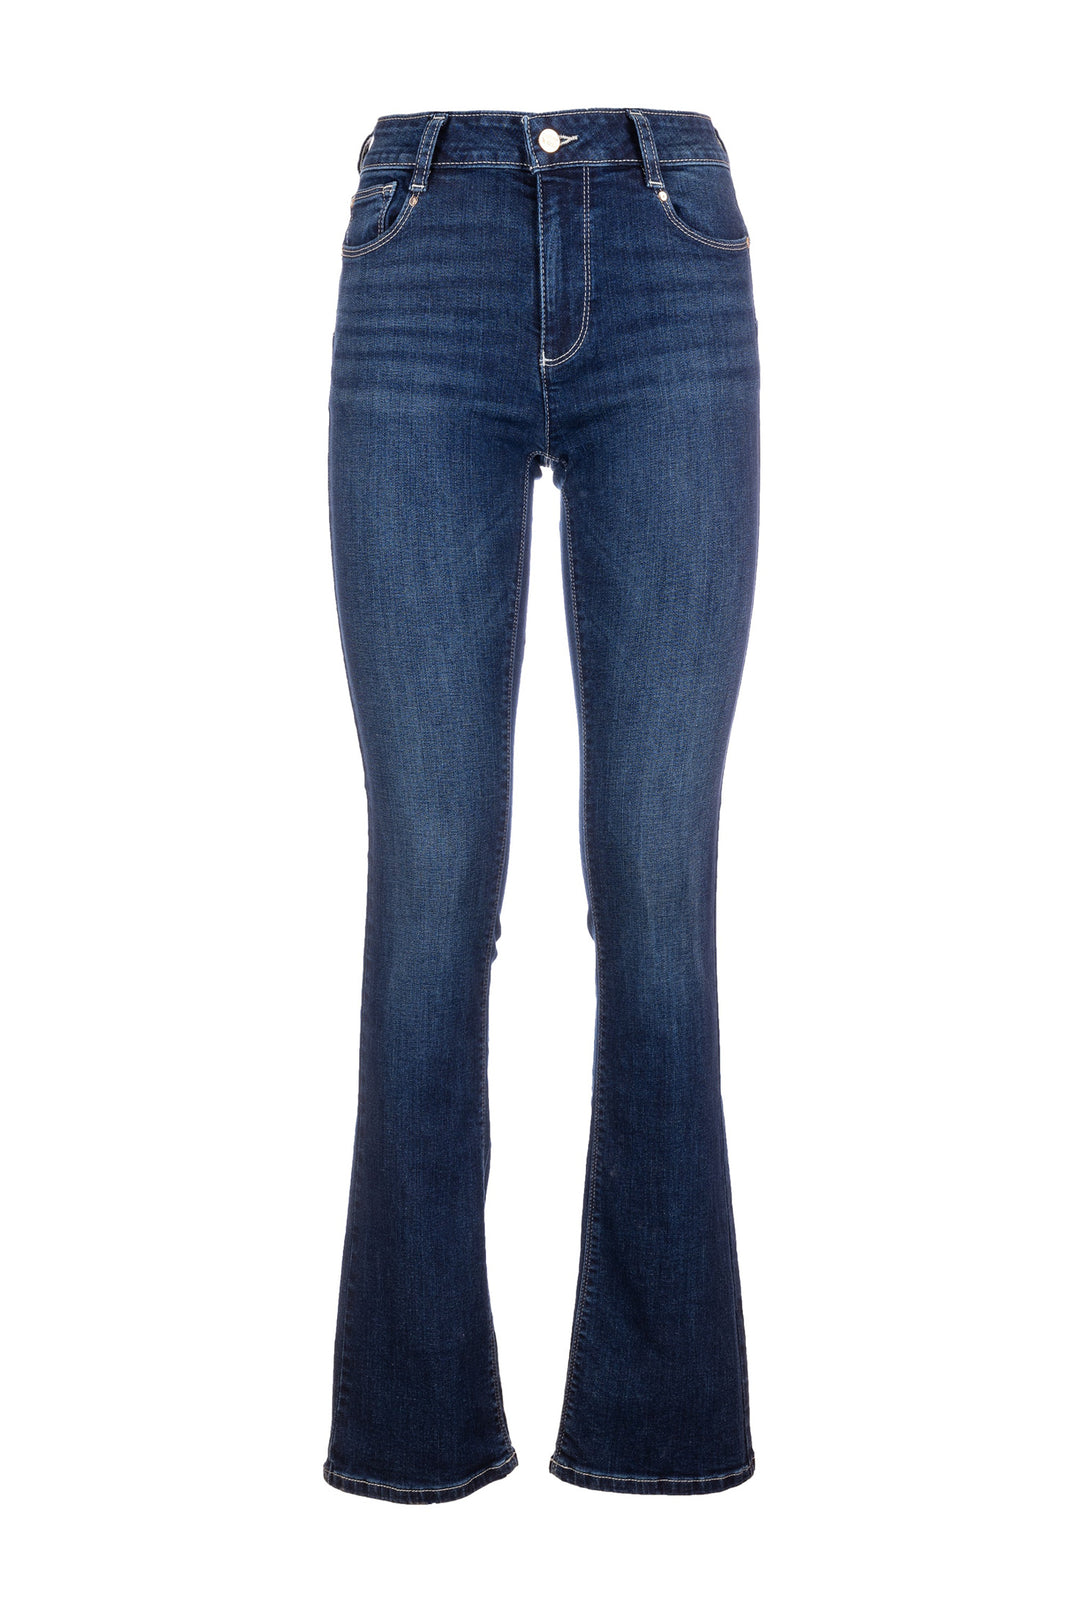 FRACOMINA Jeans bootcut effetto push up in denim con lavaggio scuro - Mancinelli 1954